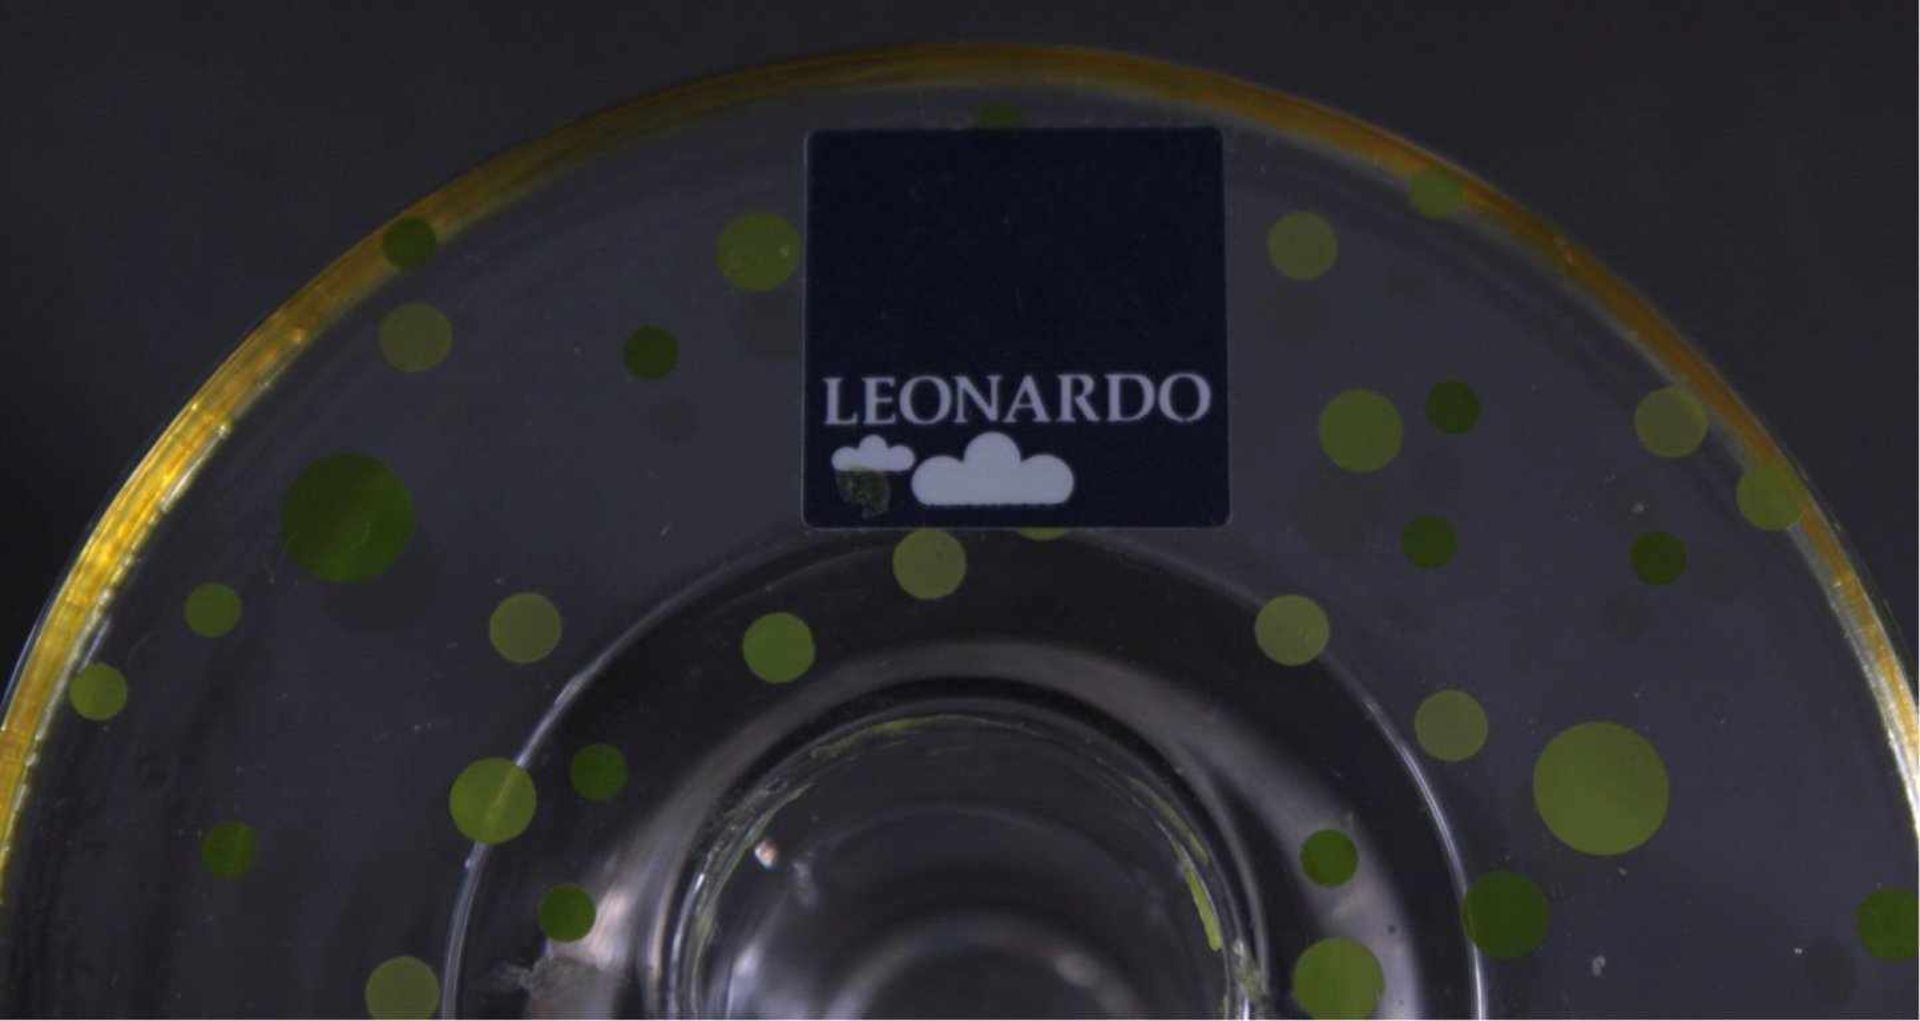 Leonardo-Glas, 16 TeileFarbloses Glas bunt überfangen, 1 Schale Millefiori, ca. H-7cm, 1 Schale, - Bild 4 aus 4